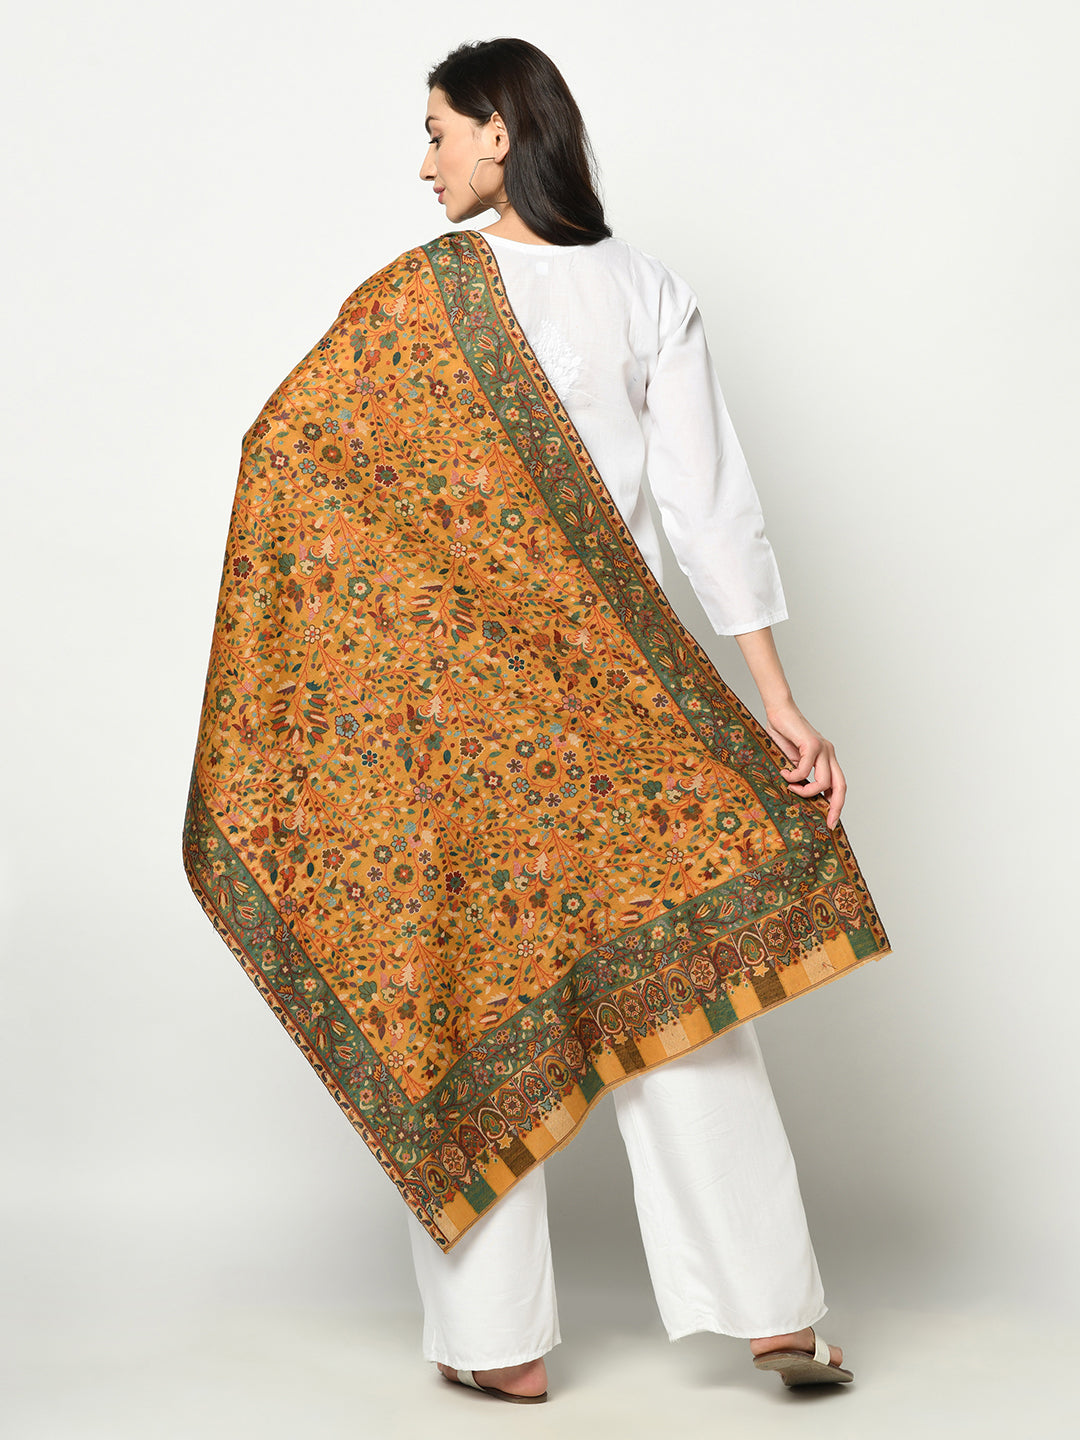 Safaa Viscose Acrylic Fabric Women's Mustard Stole